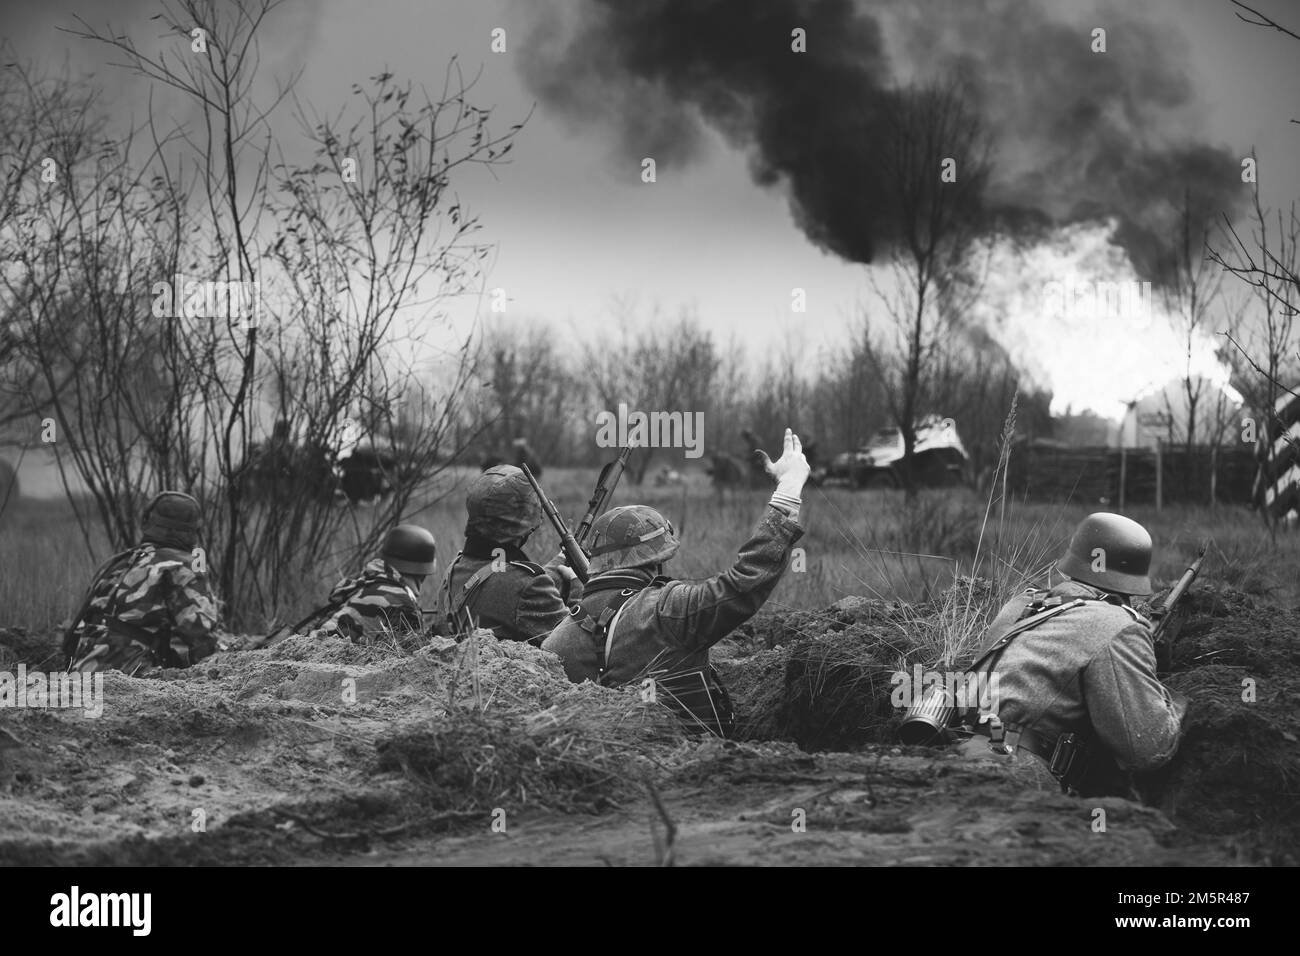 Verteidigungsposition. Nachbemaler bewaffneter Gewehre und gekleidet als deutsche Wehrmacht-Infanterie-Soldaten aus dem Zweiten Weltkrieg, die in Trench defensiv kämpfen. Gebäude Stockfoto